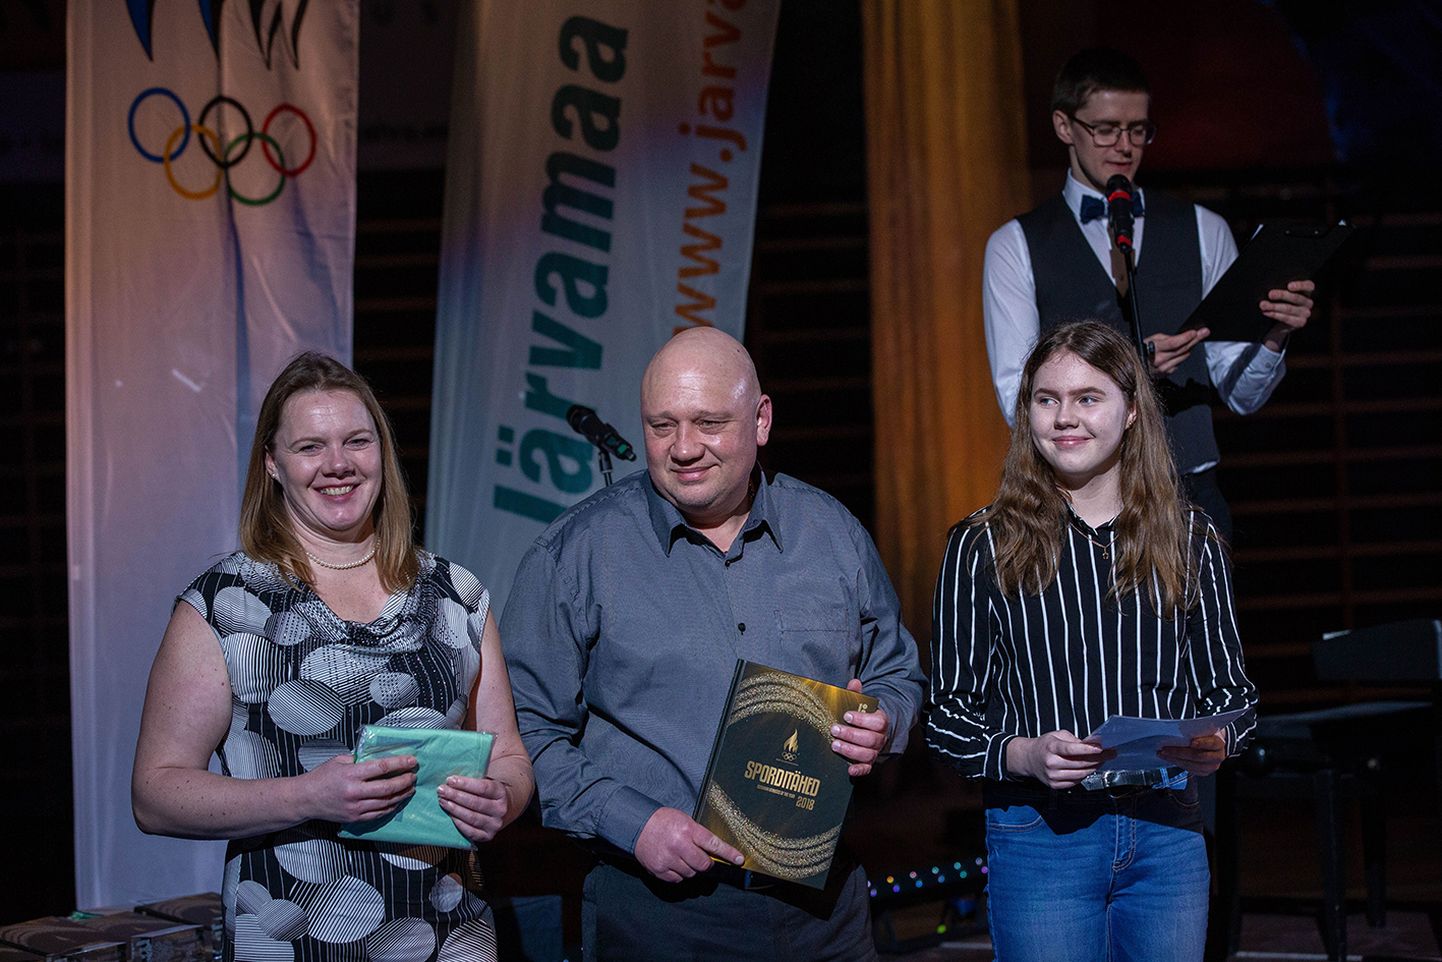 Eelmisel aastal kuulutati Järvamaa sportlikemaks pereks perekond Stern-Kullerkupp Imaverest.